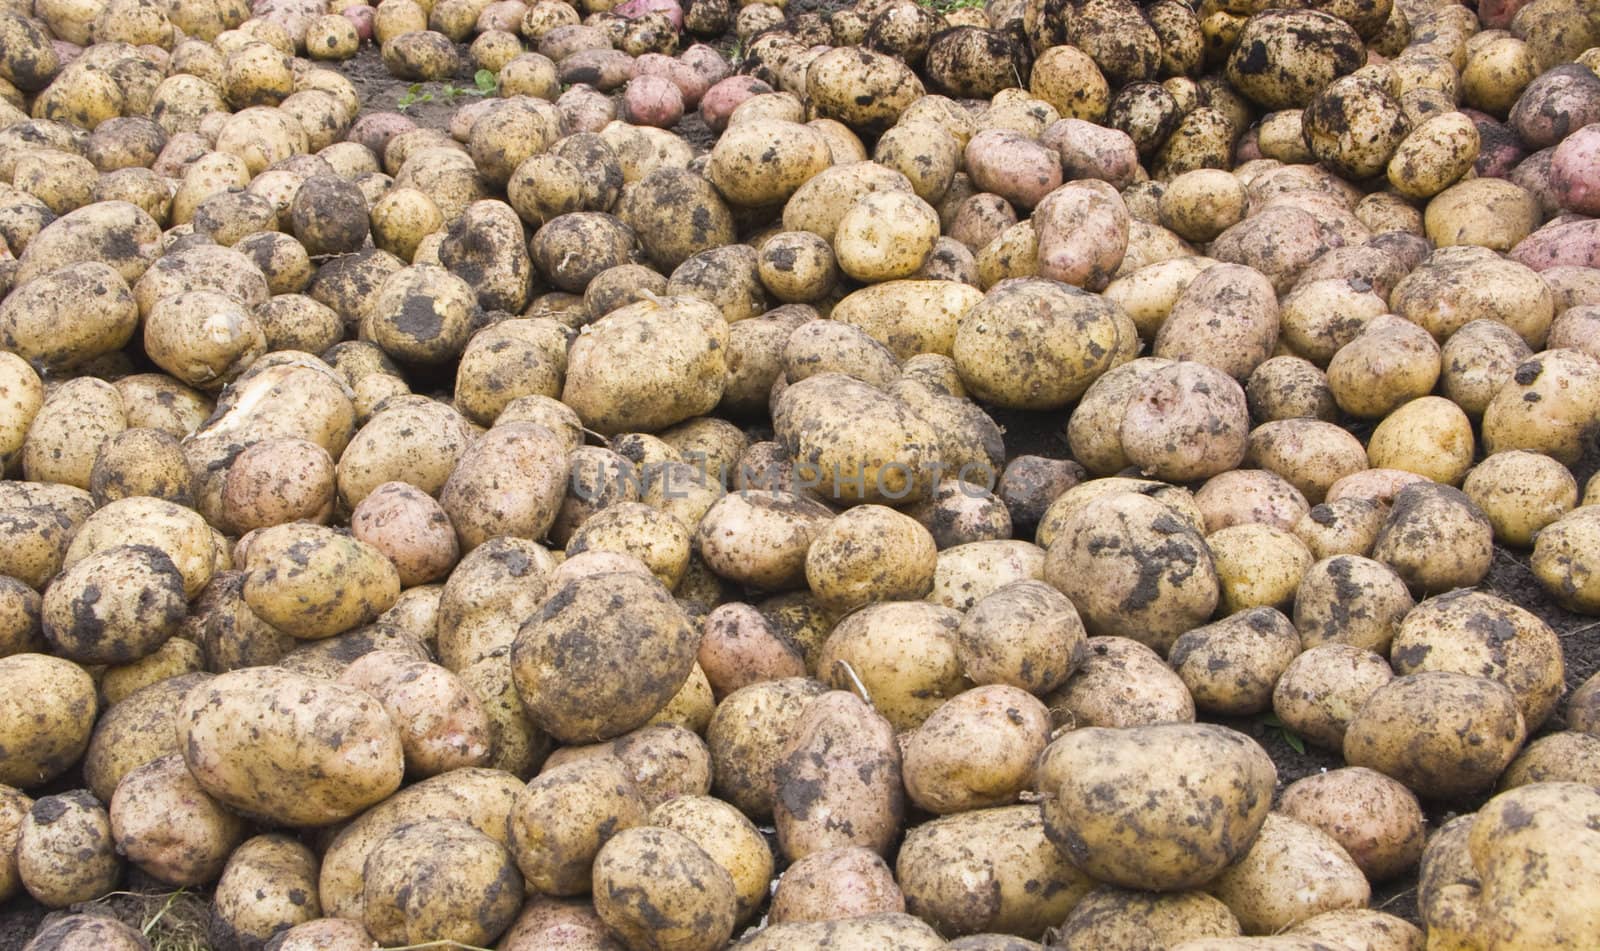 Potato by soloir